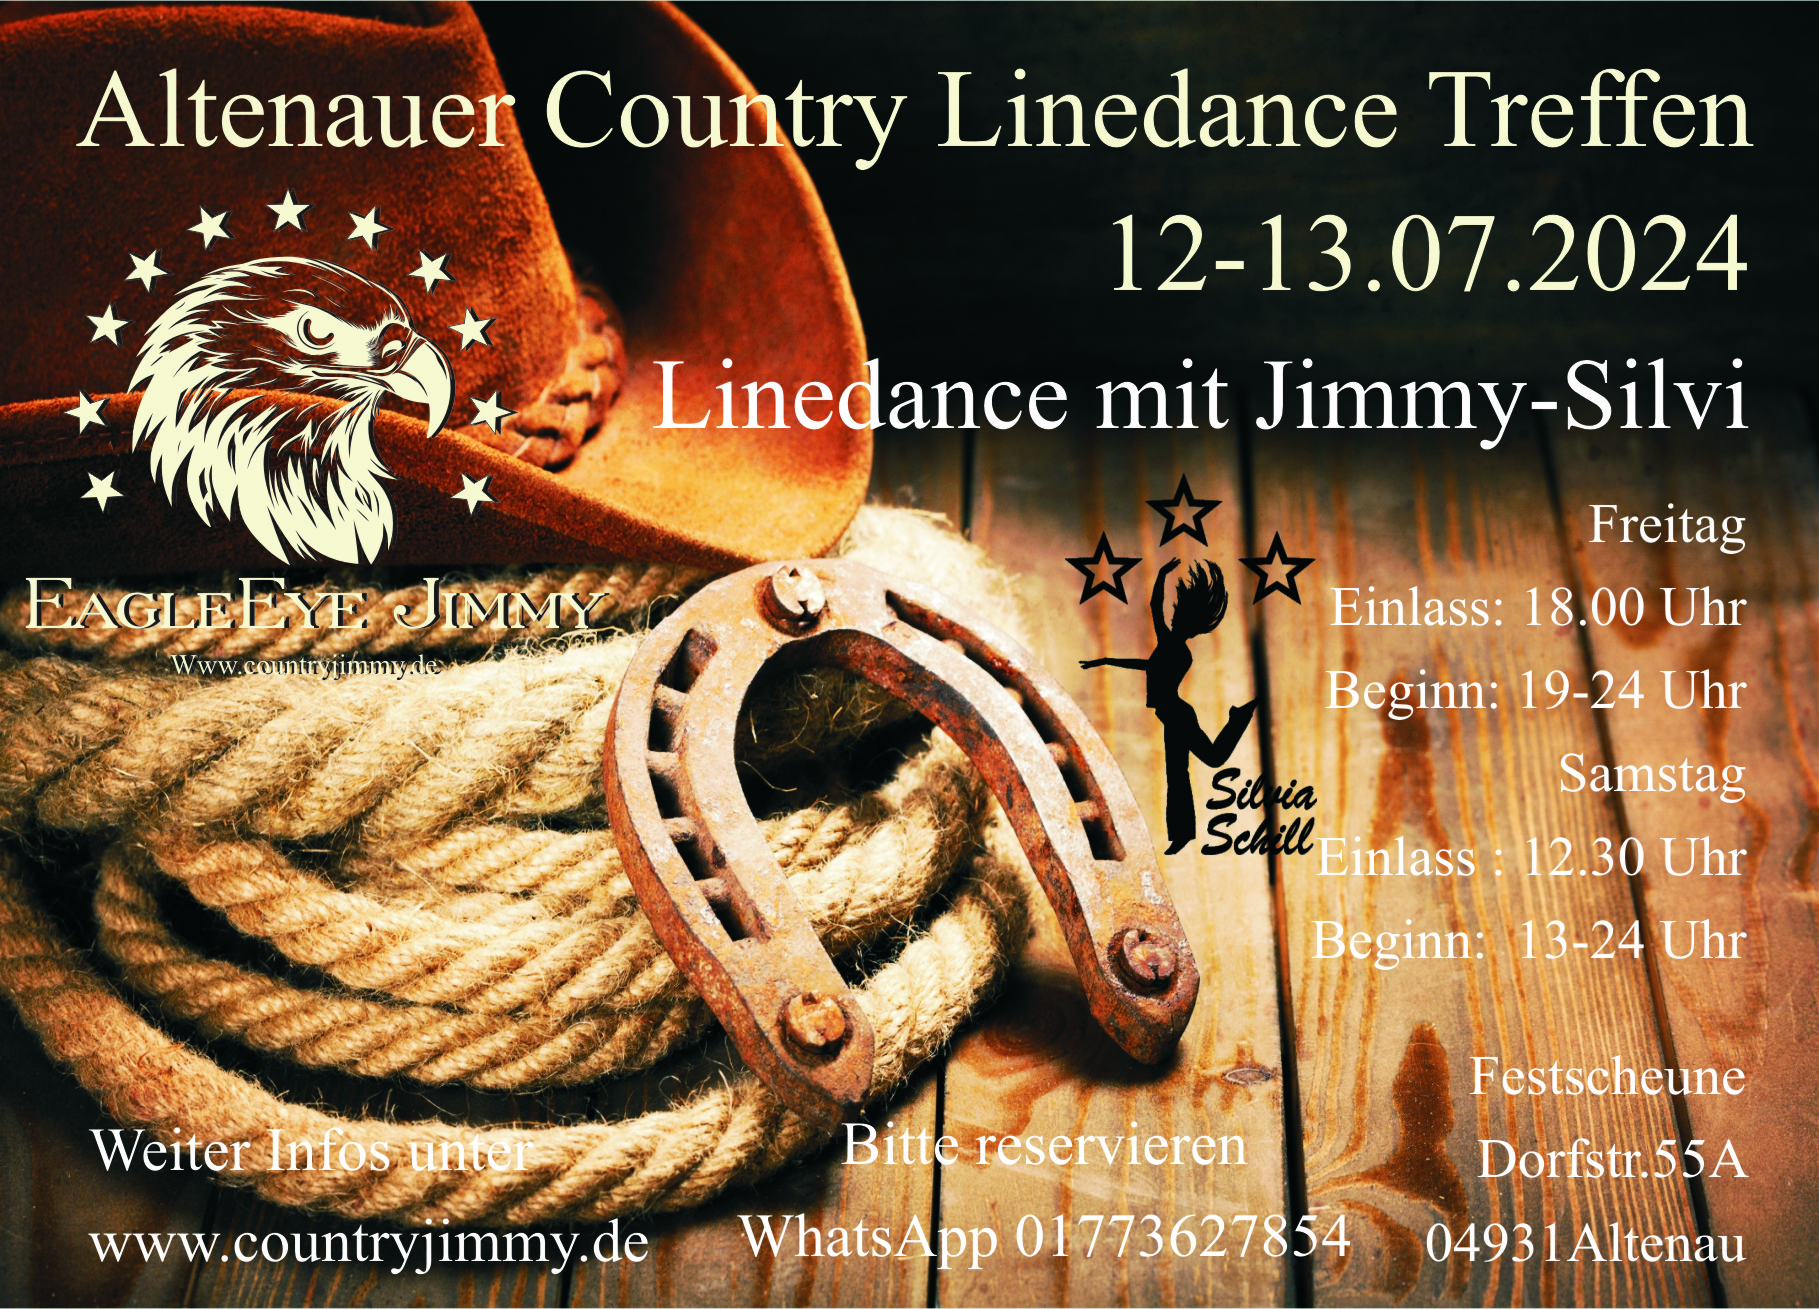 12. Altenauer Country & Linedance Treffen